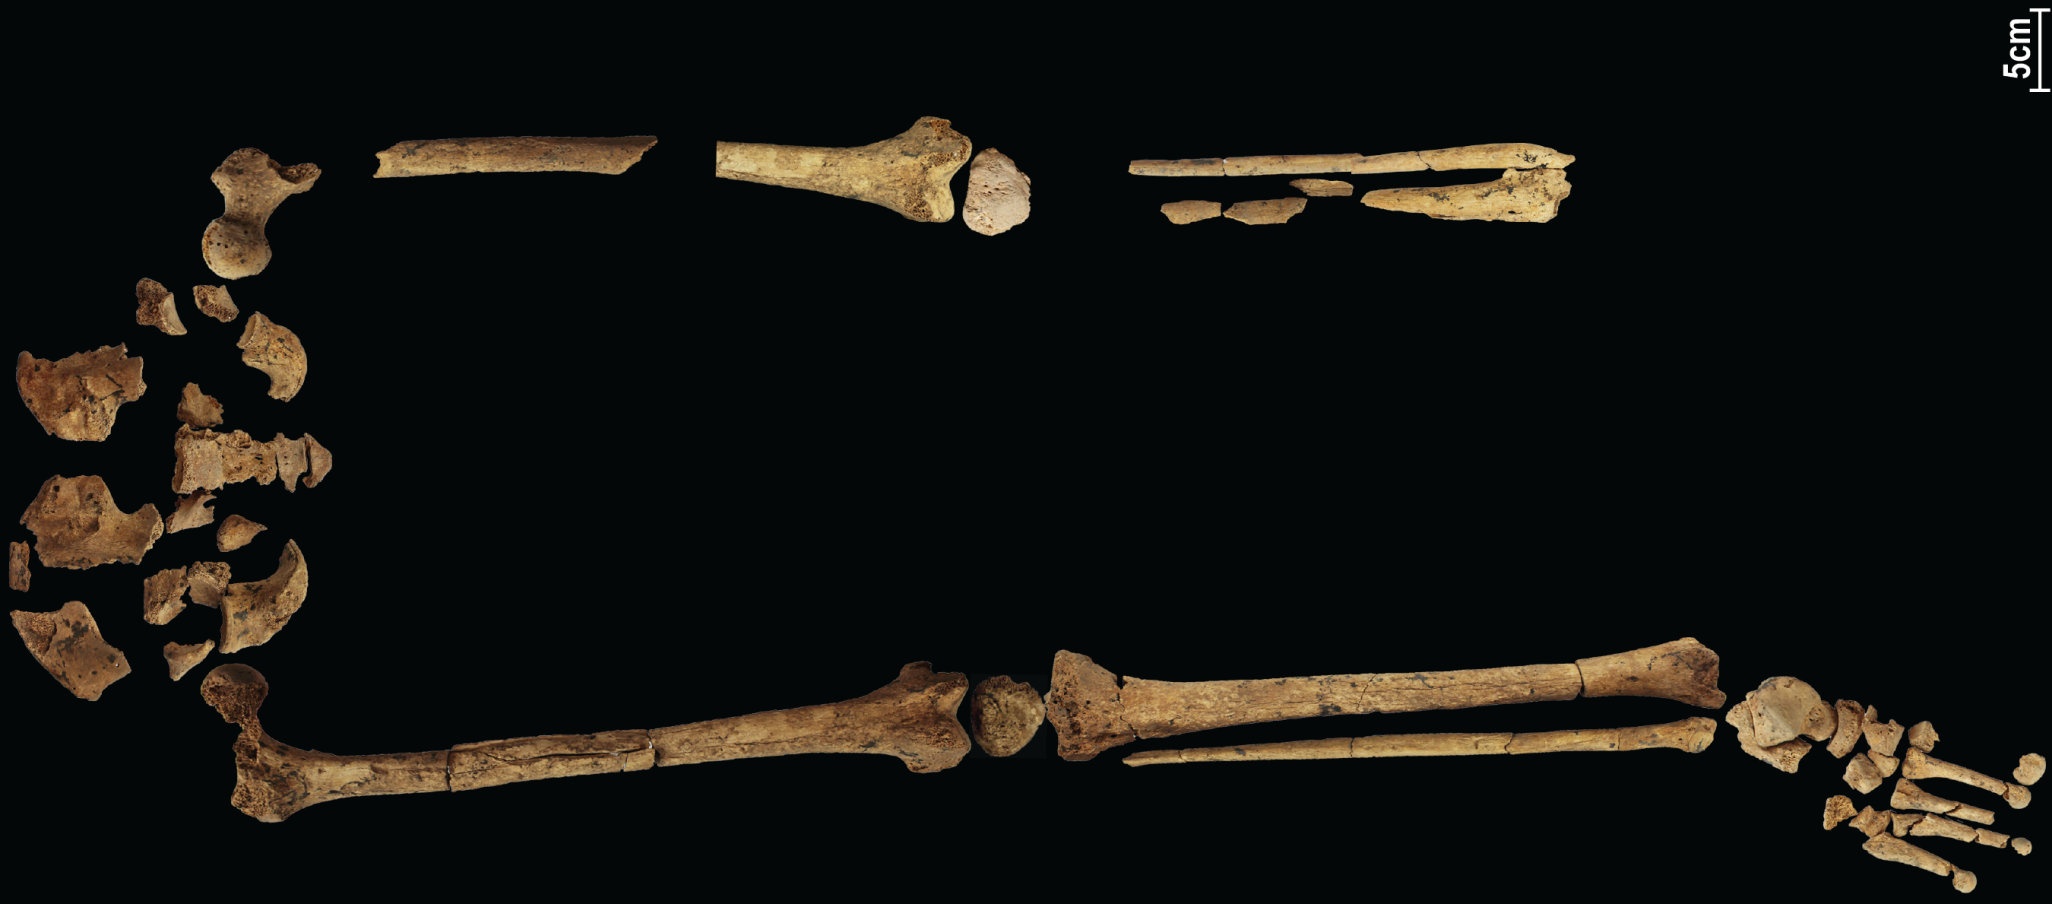 Ein 31,000 Jahre altes Skelett, das die früheste bekannte komplexe Operation zeigt, könnte die Geschichte umschreiben! 4